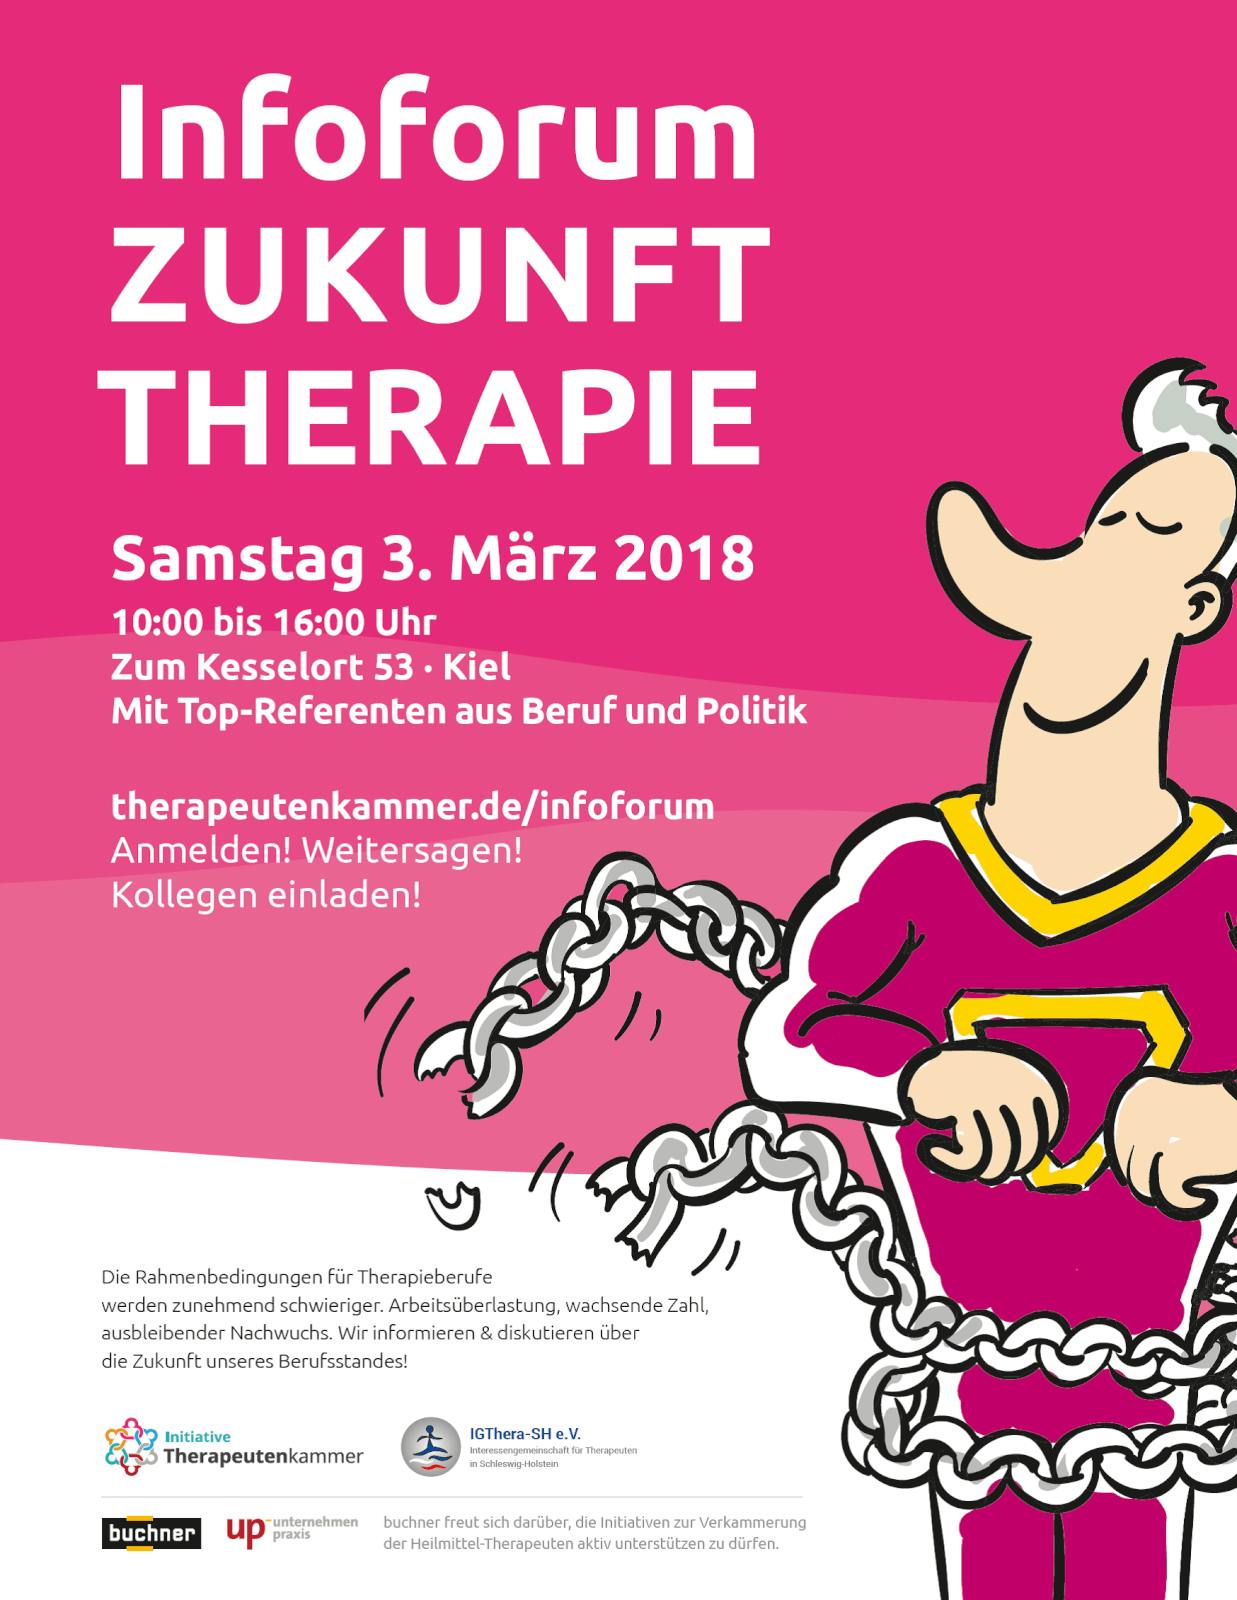 Jetzt anmelden zum InfoForum Zukunft Therapie am 3. März 2018 in Kiel